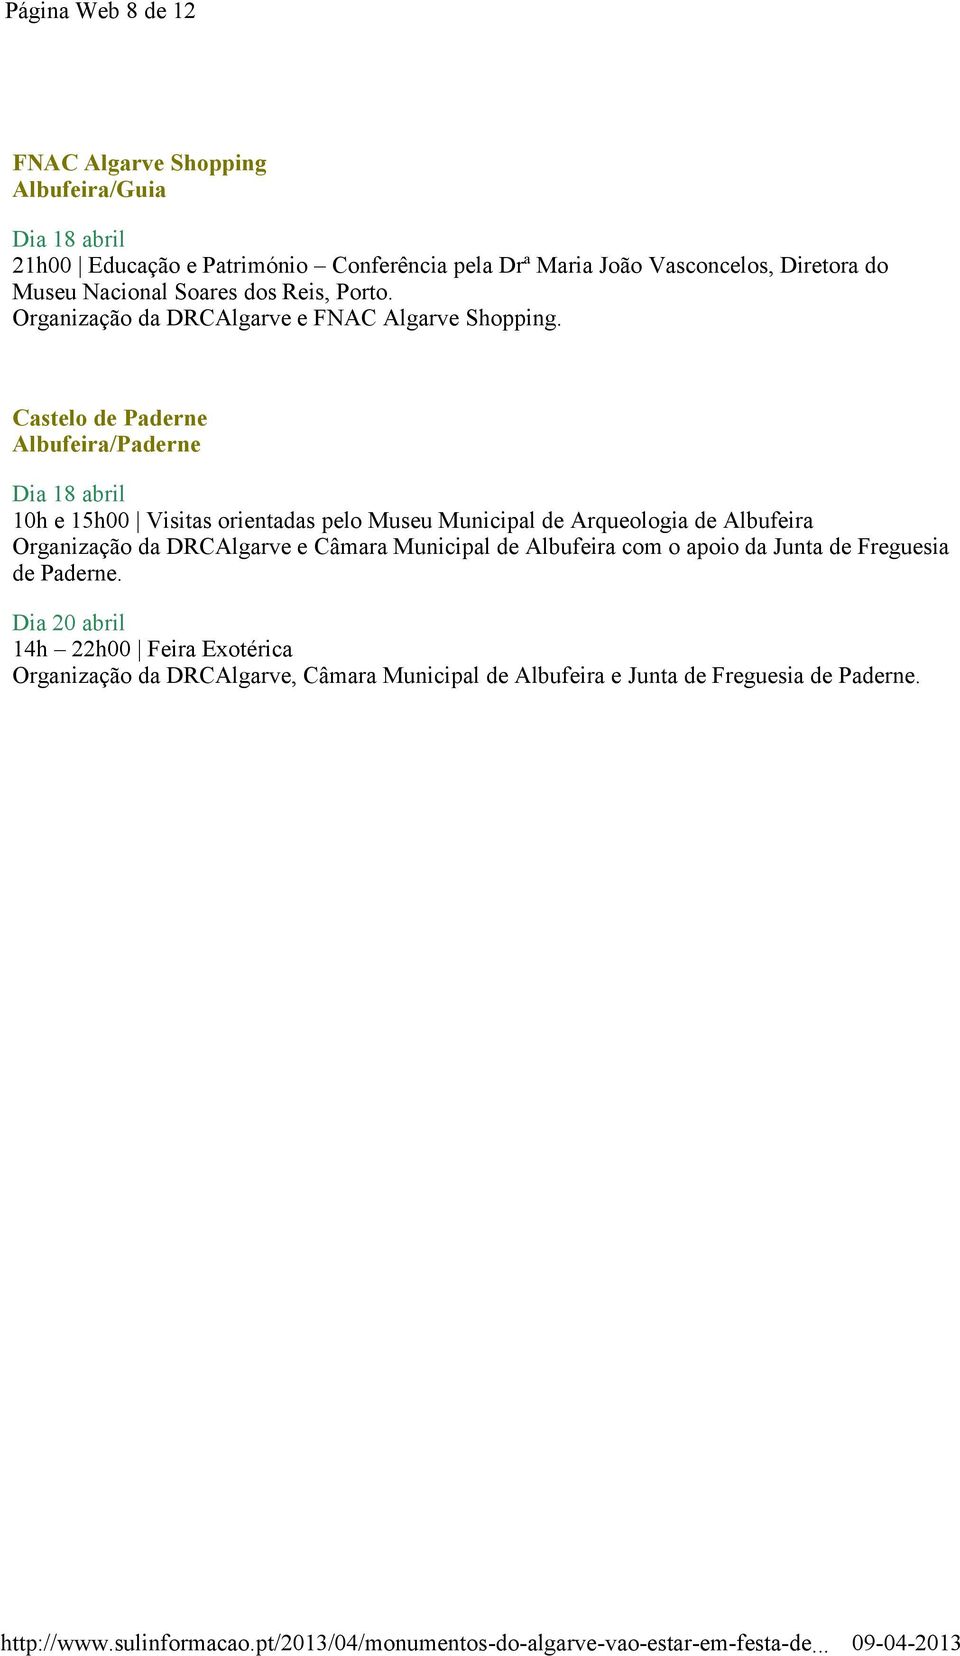 Castelo de Paderne Albufeira/Paderne Dia 18 abril 10h e 15h00 Visitas orientadas pelo Museu Municipal de Arqueologia de Albufeira Organização da